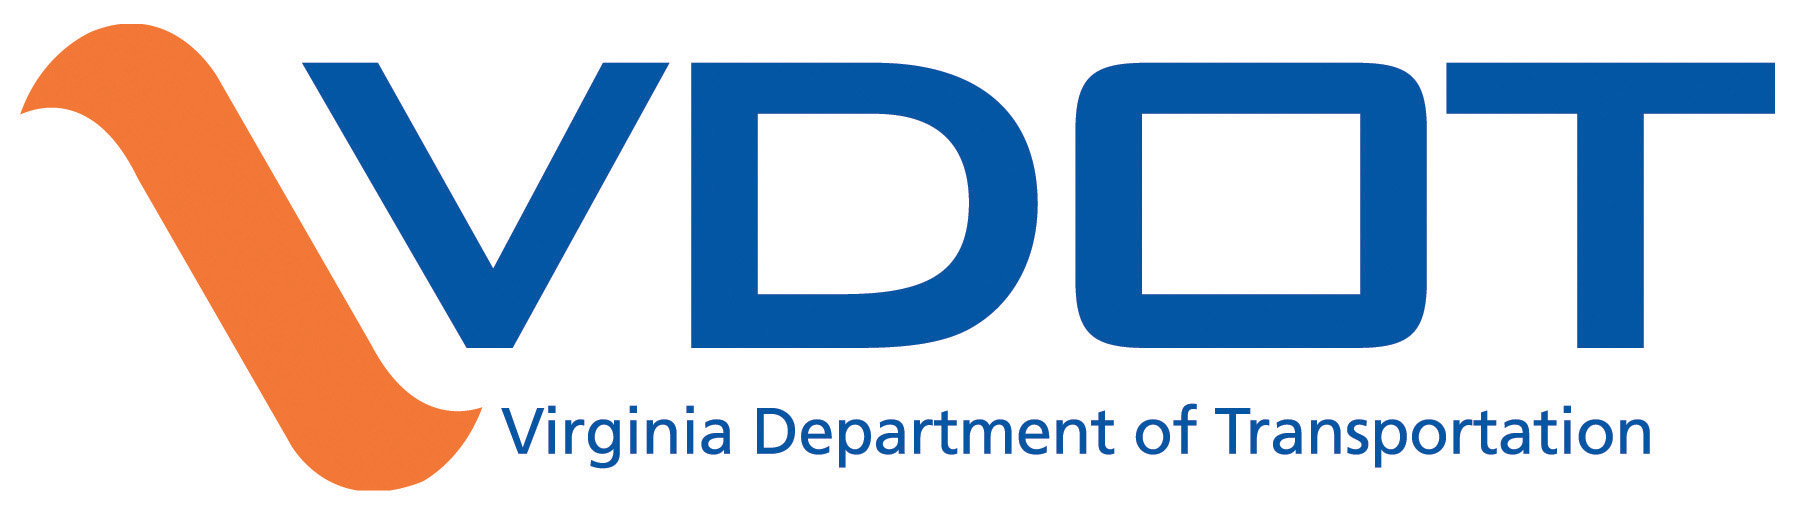 Virginia Department of Transportation logo